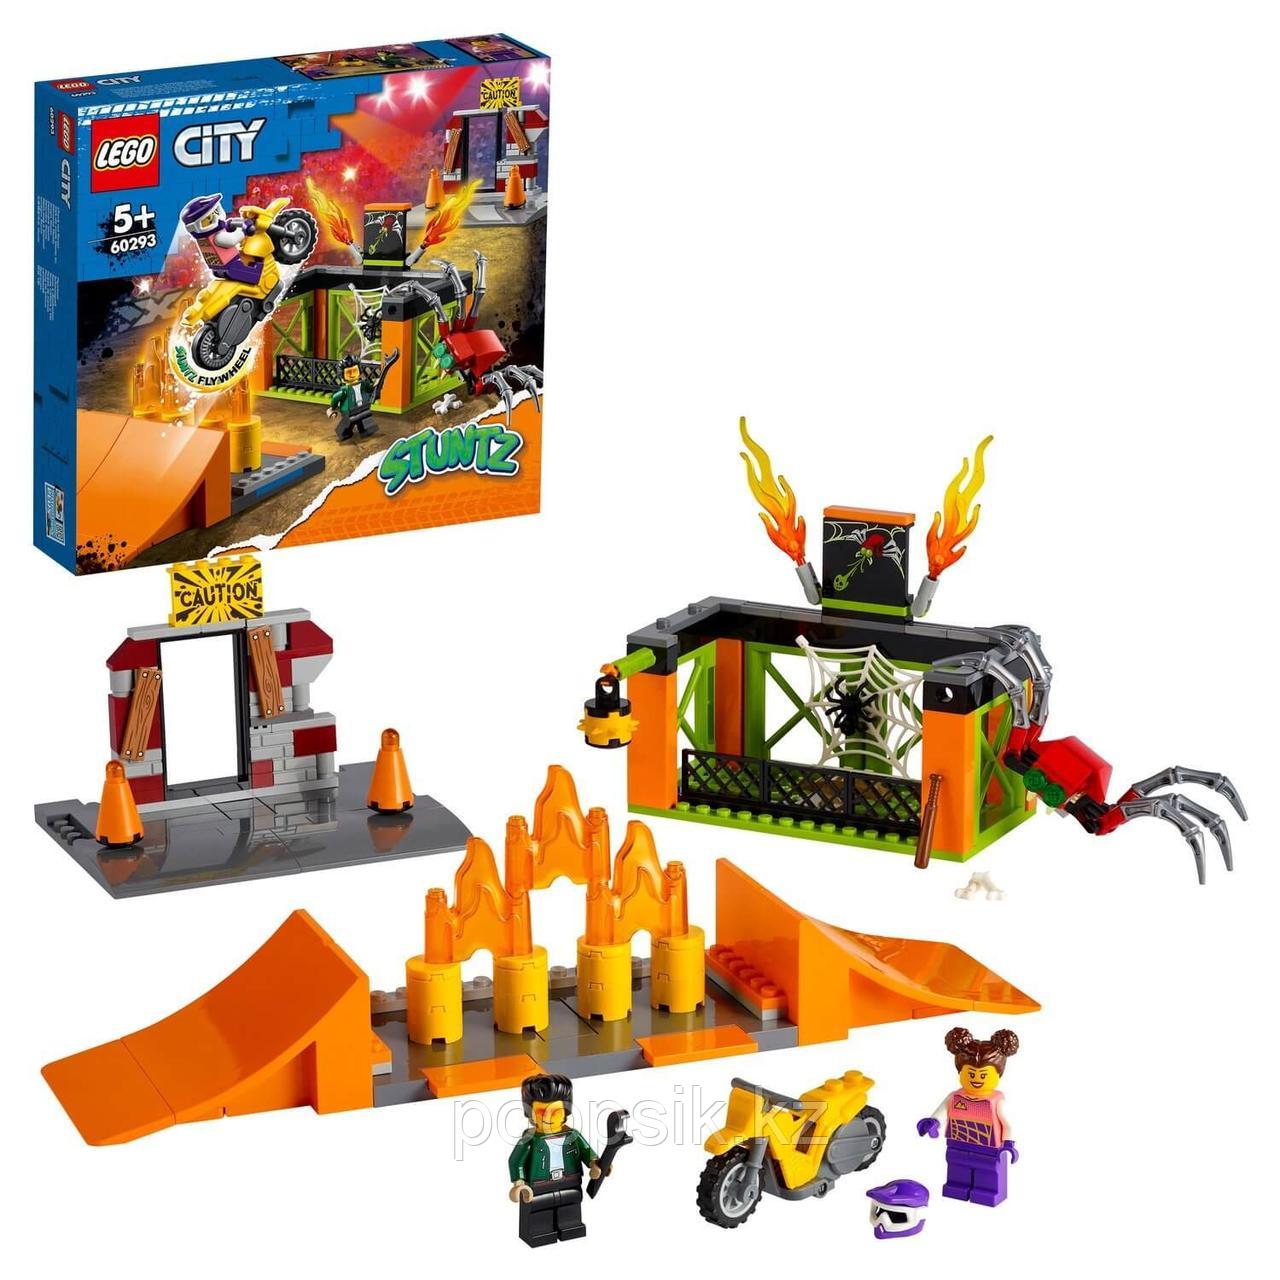 Lego City Парк каскадёров 60293